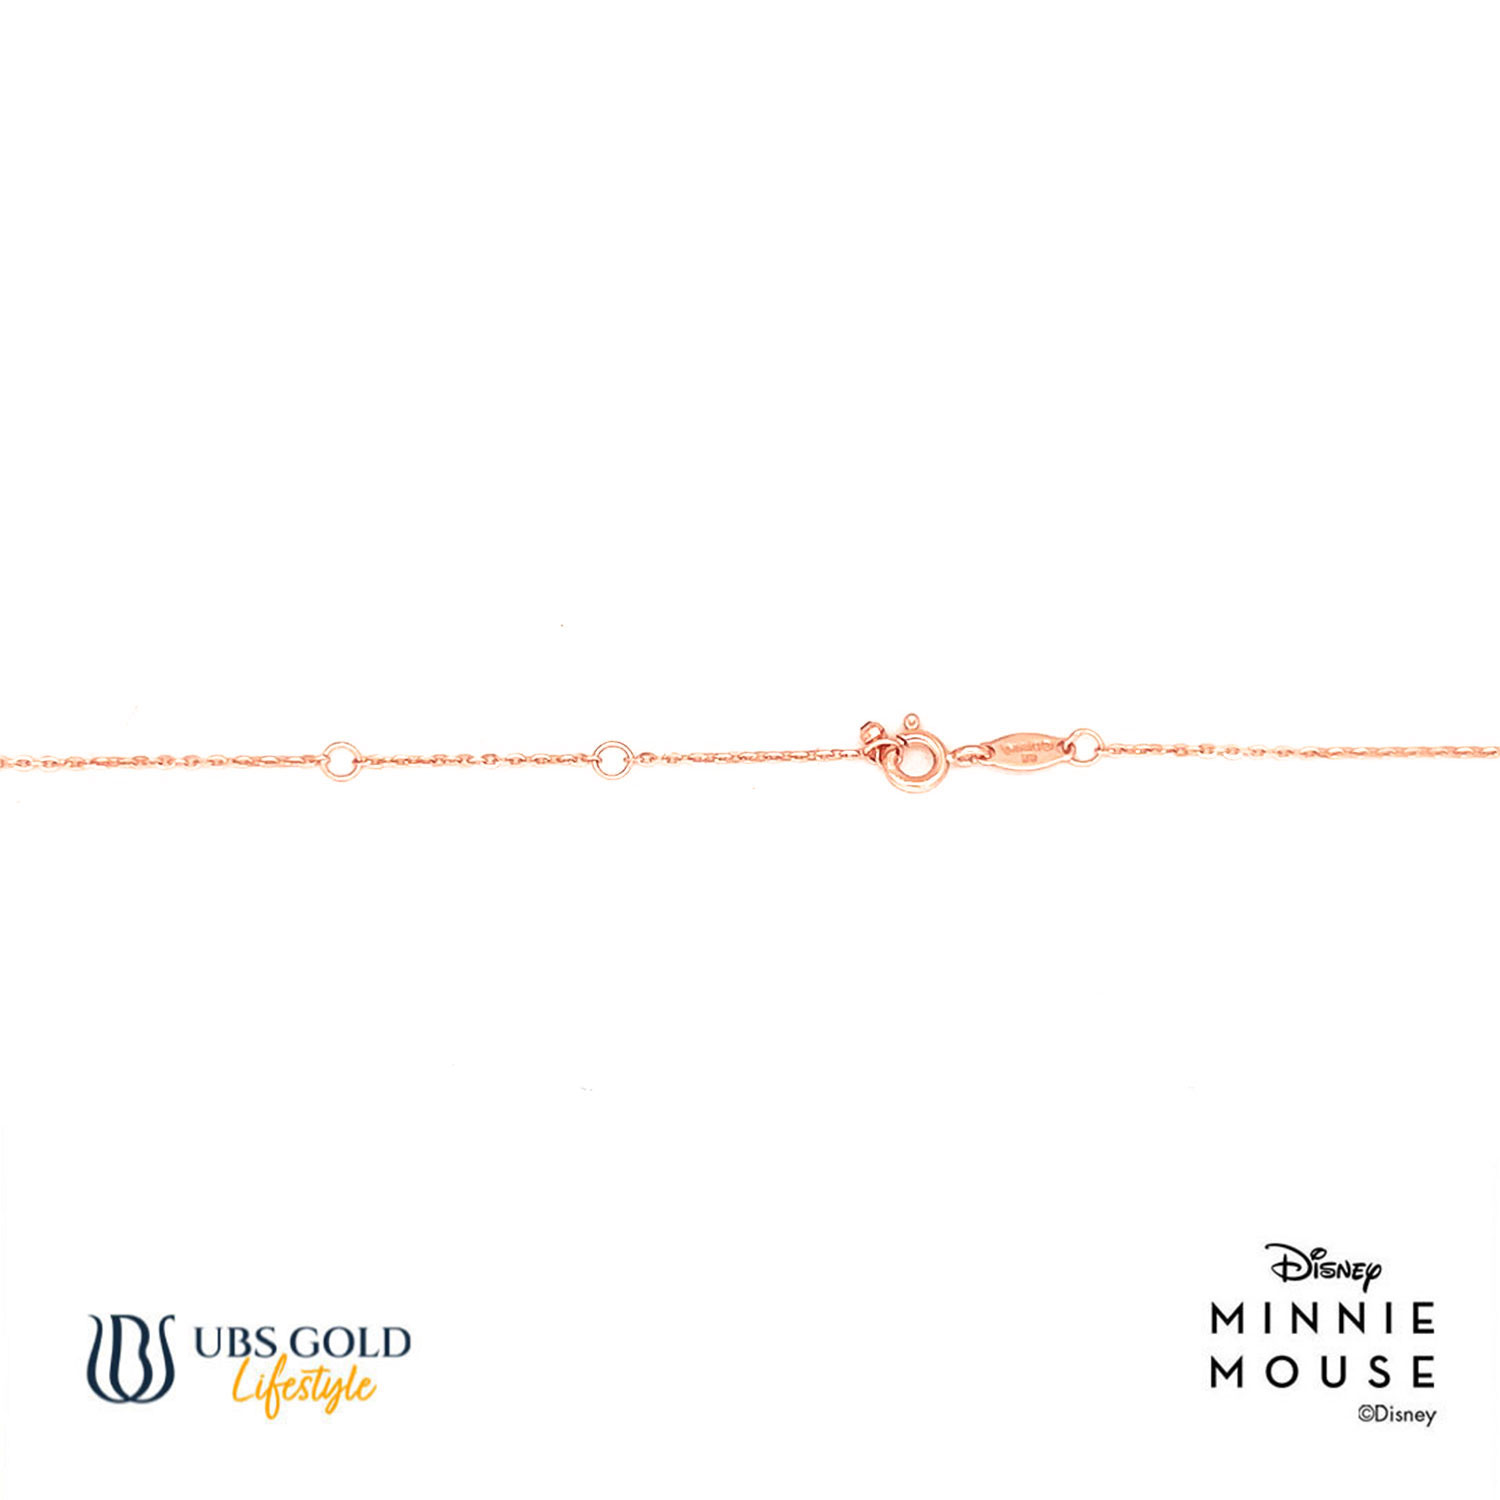 UBS Gold Kalung Emas Disney Minnie Mouse - Kky0462 - 17K